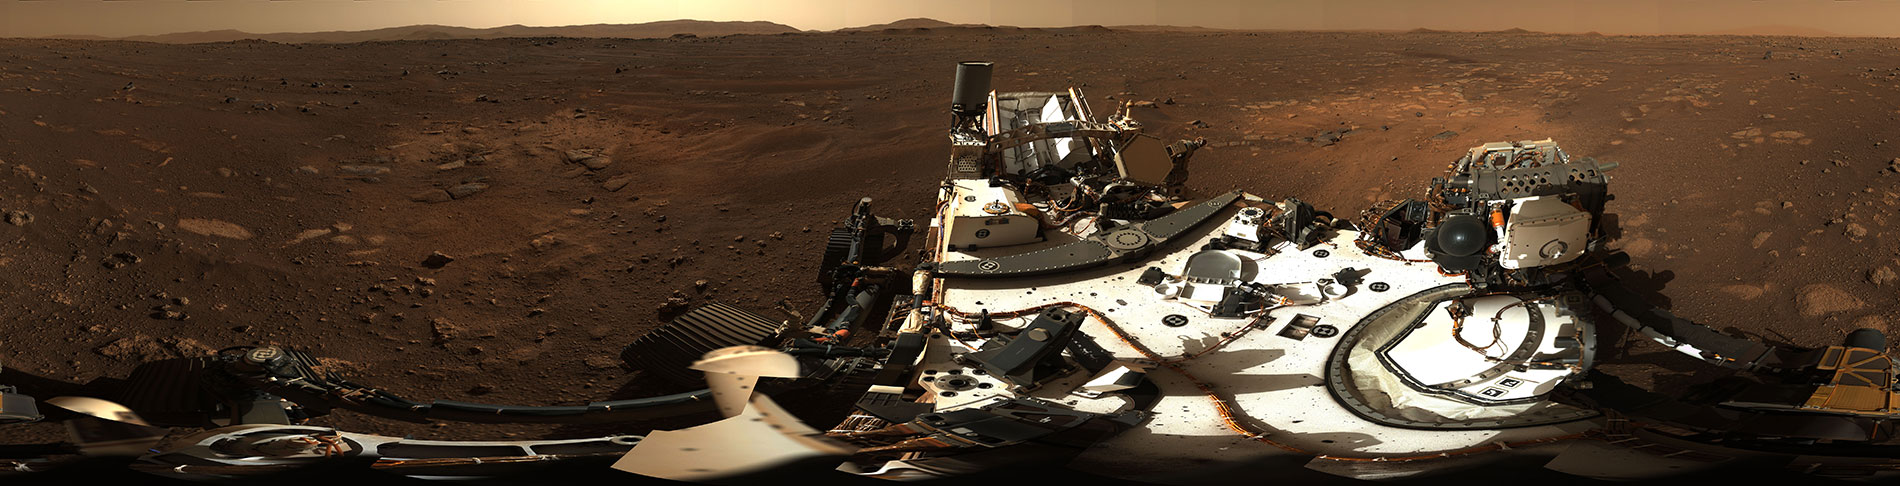 Zatím nejkrásnější panorama z Marsu